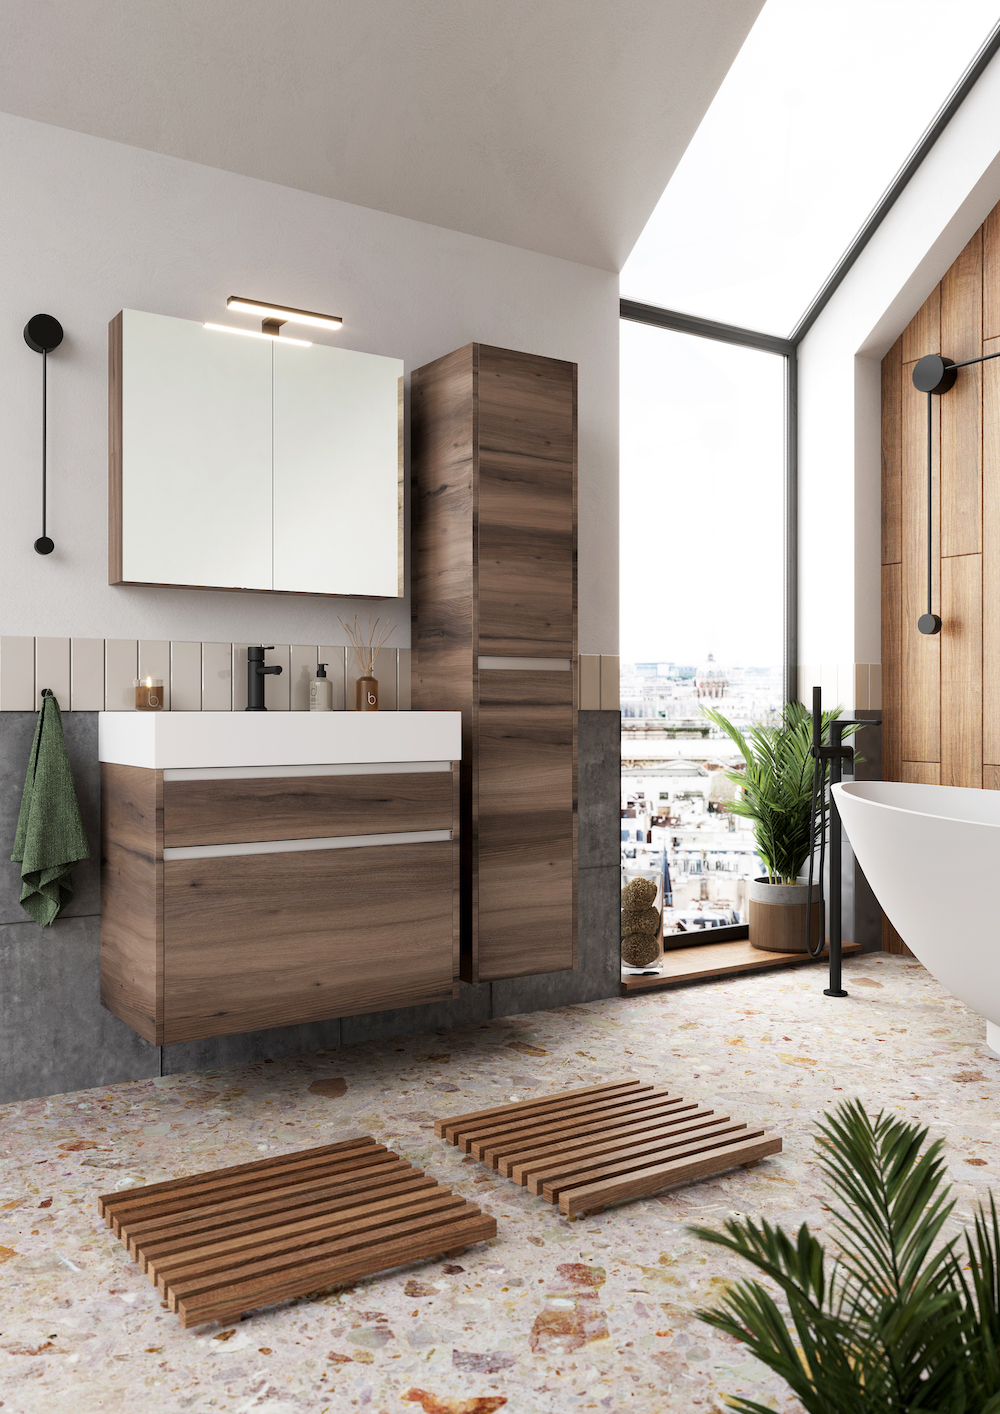 Duurzame en groene badkamer. mijn bad in stijl #badkamer #duurzaam #hout #badkamermeubel #badkamerinspiratie #badkameridee